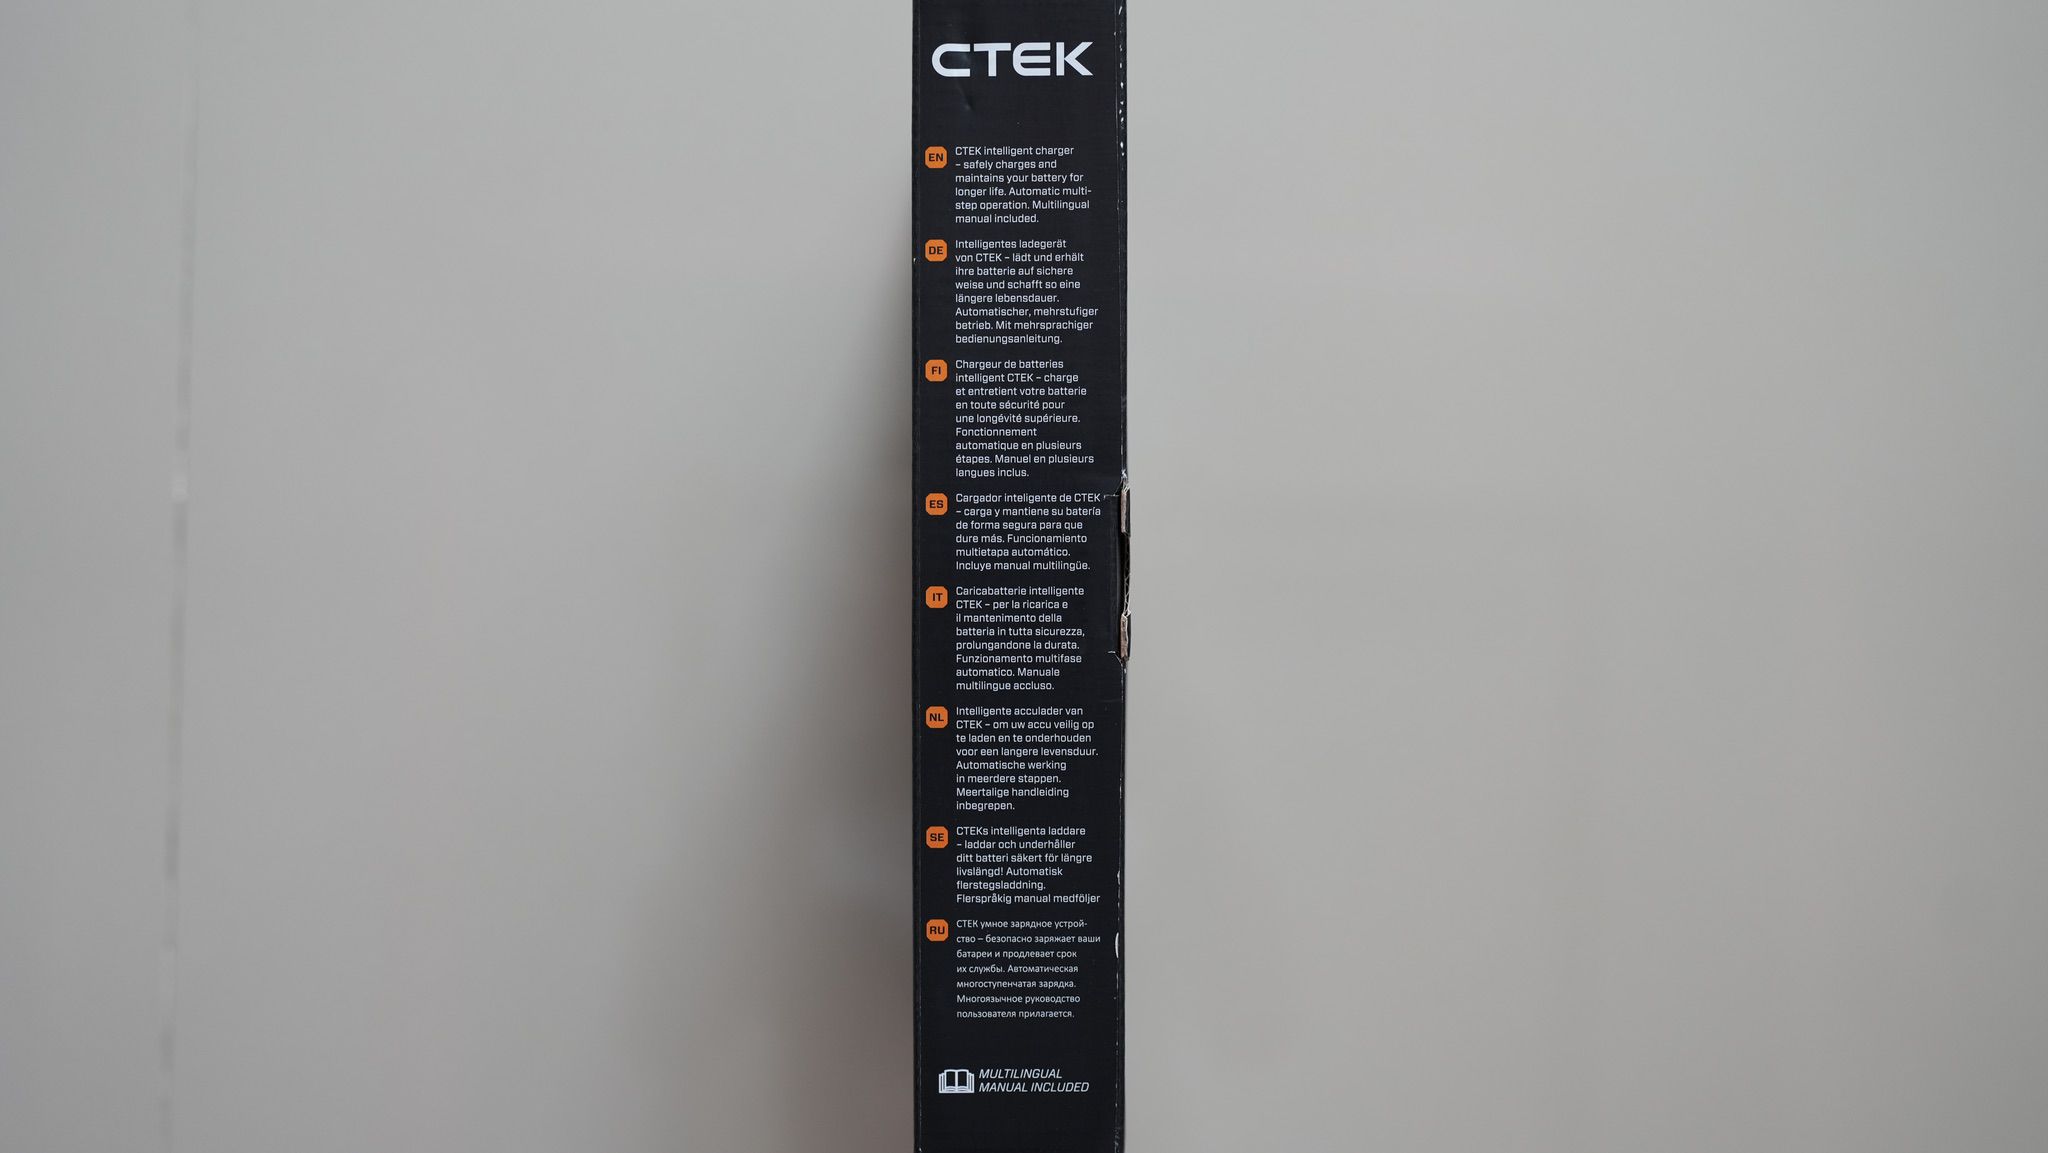 รีวิว CTEK MXS5.0 เครื่องชาร์จแบต 12V ครอบจักรวาลสัญชาติสวีเดน